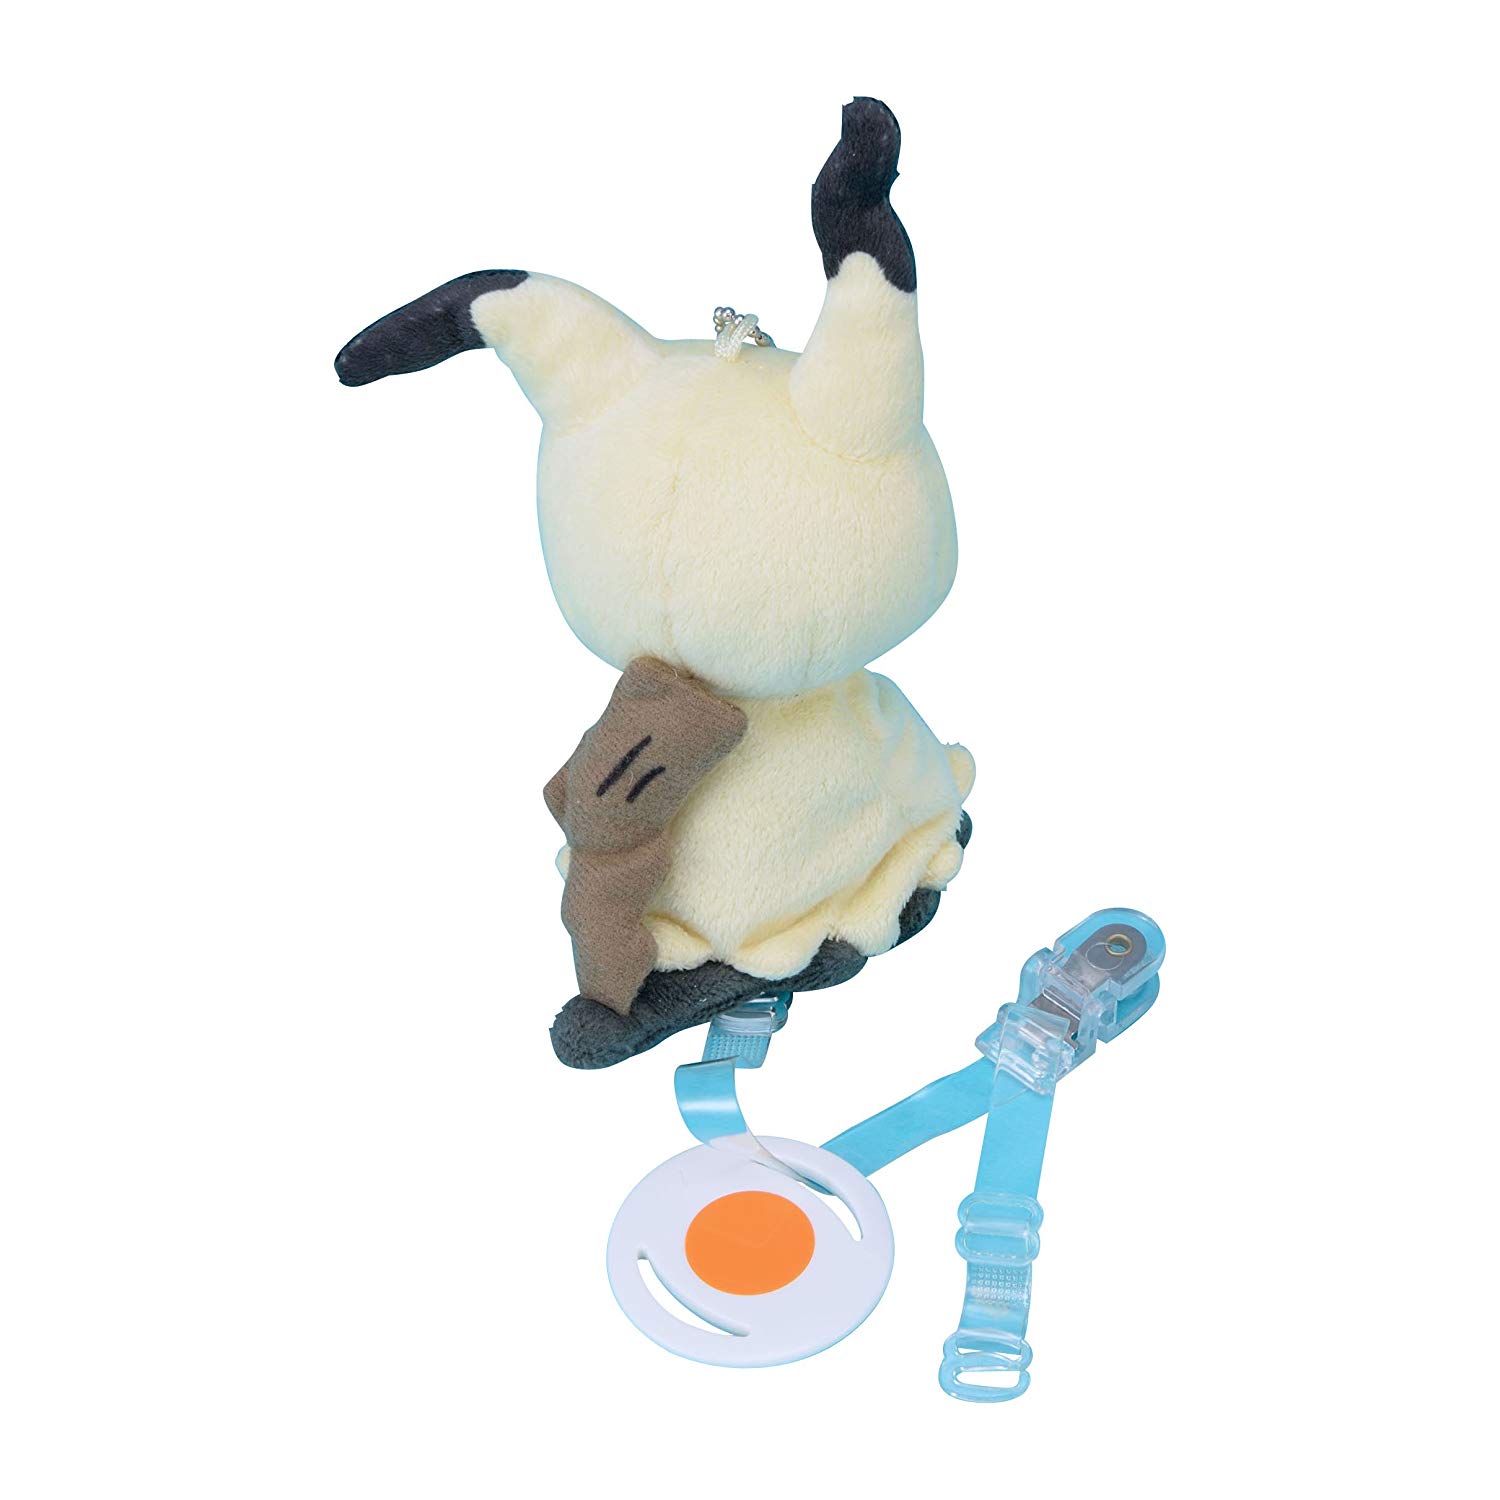 Shiny Mimikyu Plush Toy Secretly Released